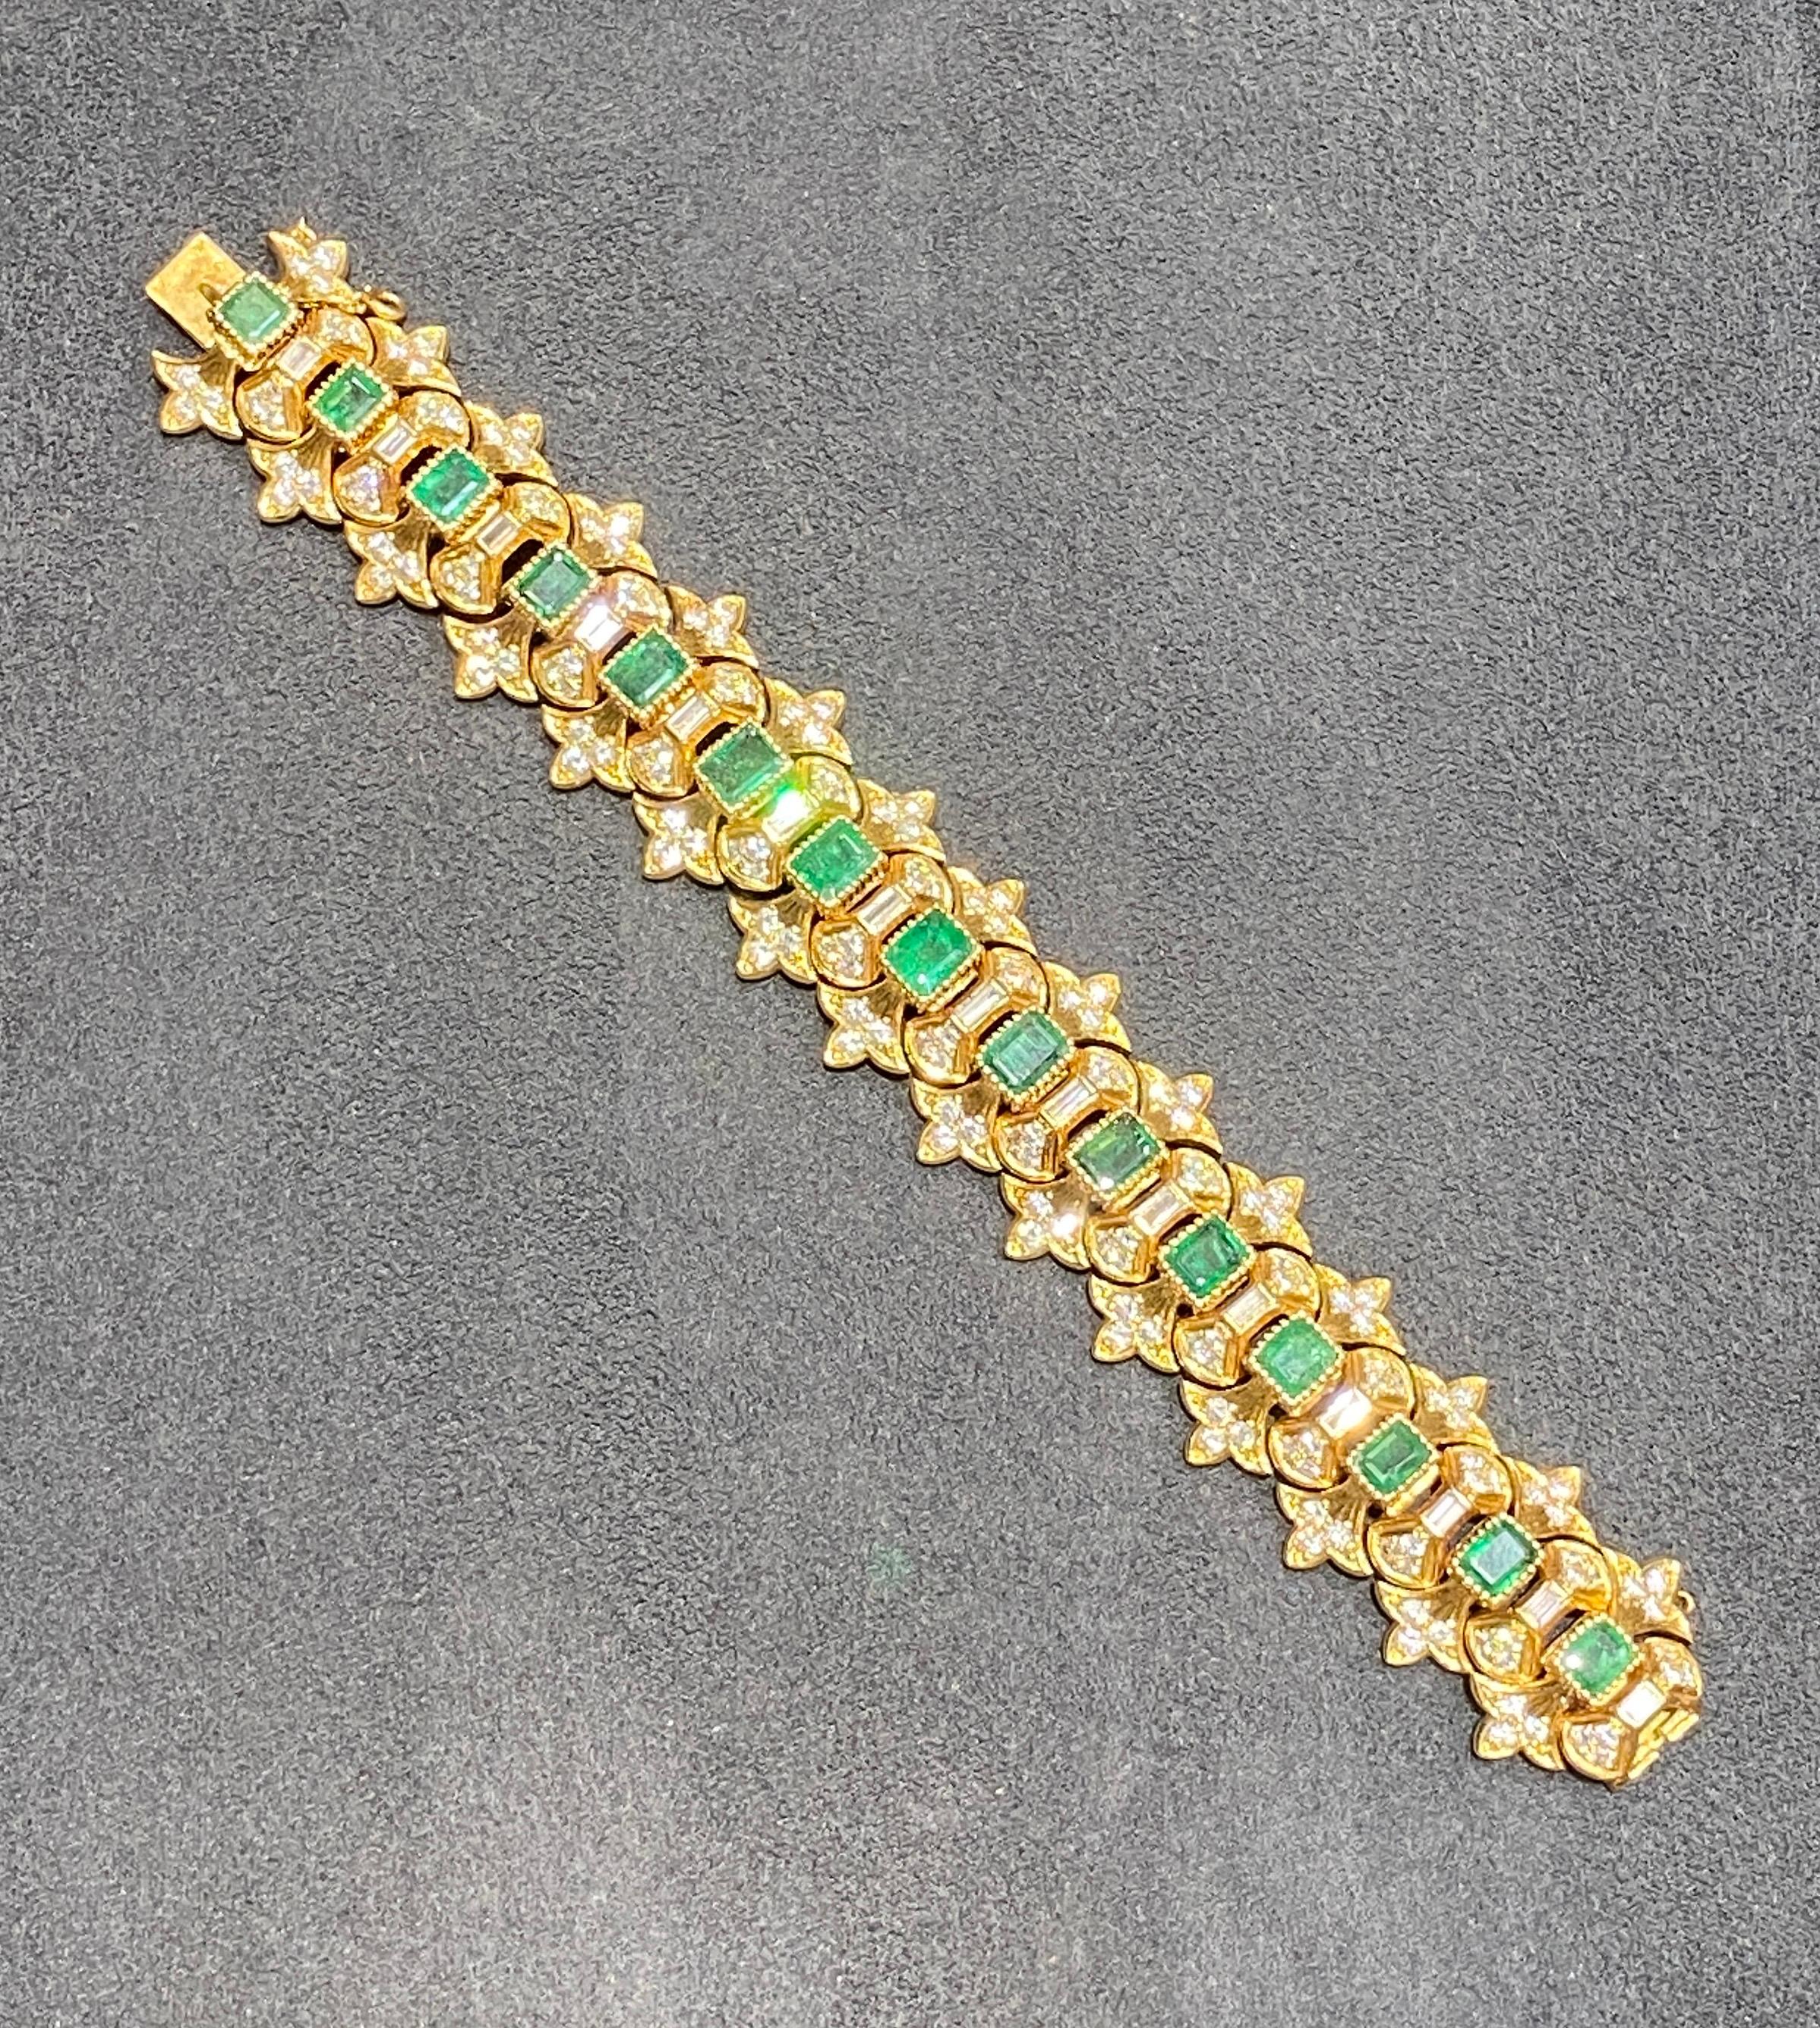 Dieses auffällige Buccellati-Armband ist aus 18 Karat Gold, Diamanten und Smaragden gefertigt. Im Mittelpunkt des Designs stehen 15 kolumbianische Smaragde im Smaragdschliff mit einem Gesamtgewicht von etwa 16 Karat. Die Smaragde sind mit ca. 12